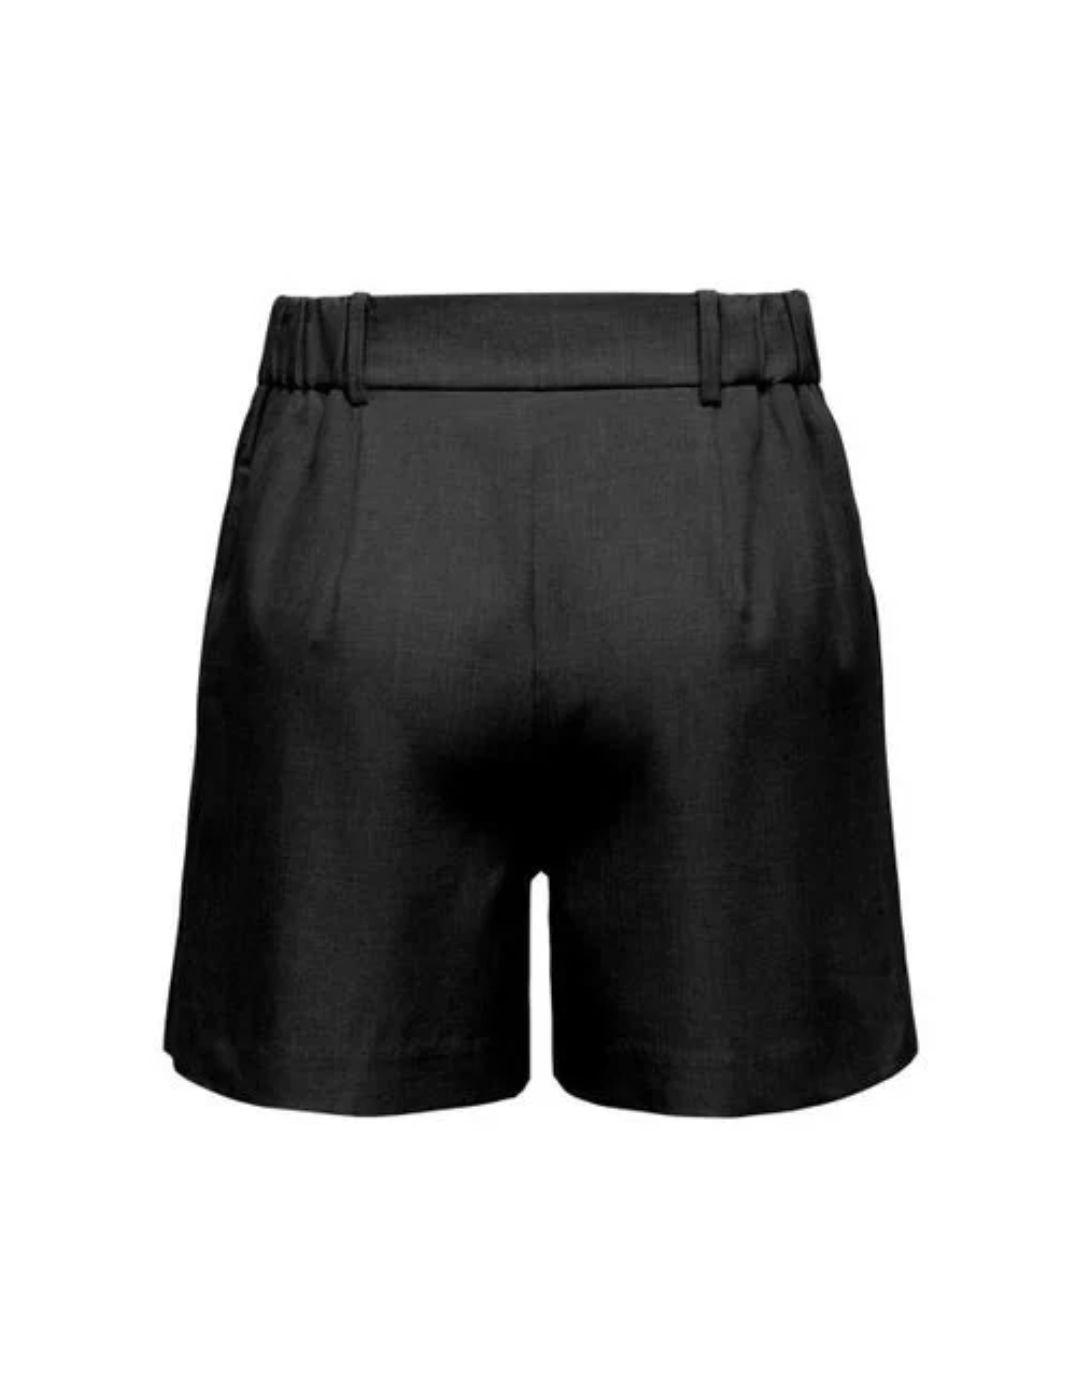 Shorts corto Only de pinzas color negro para mujer